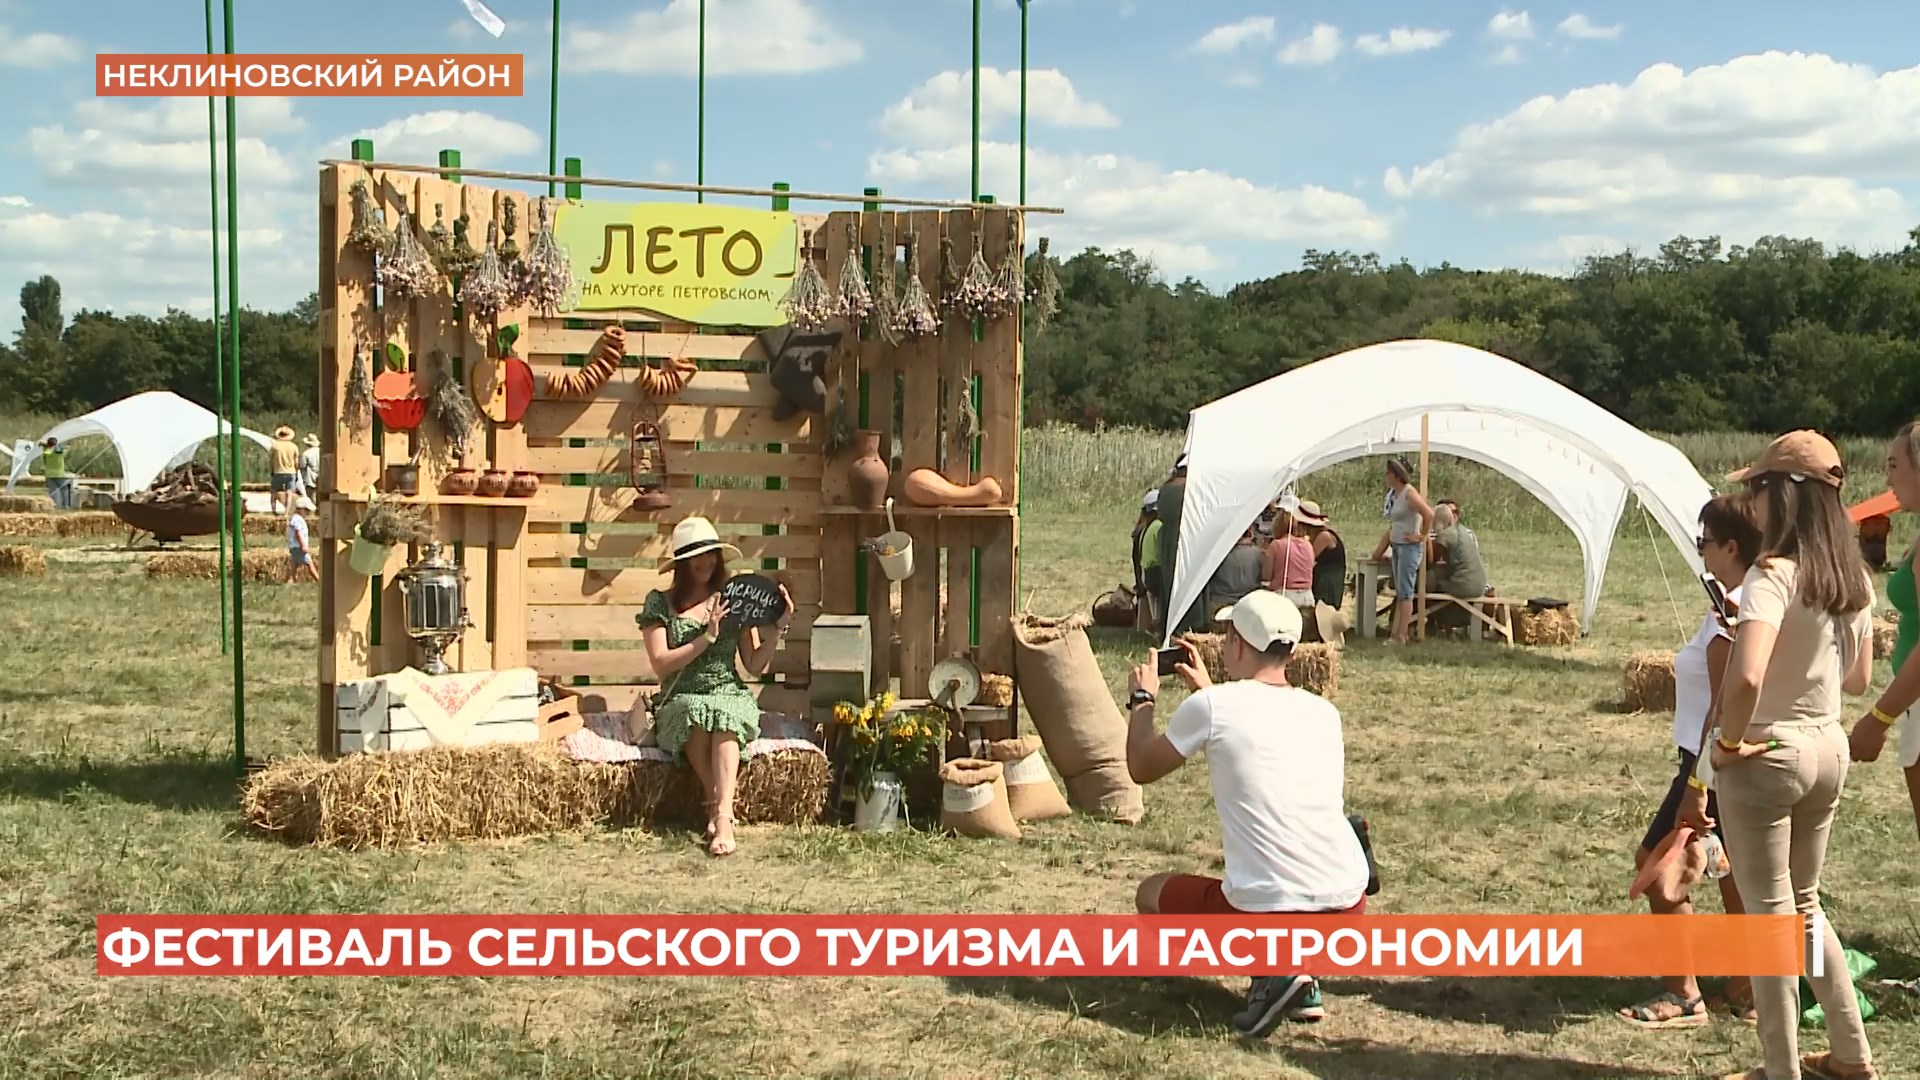 Фестиваль сельского туризма и гастрономии «Хутор Фест»  прошел в Неклиновском районе